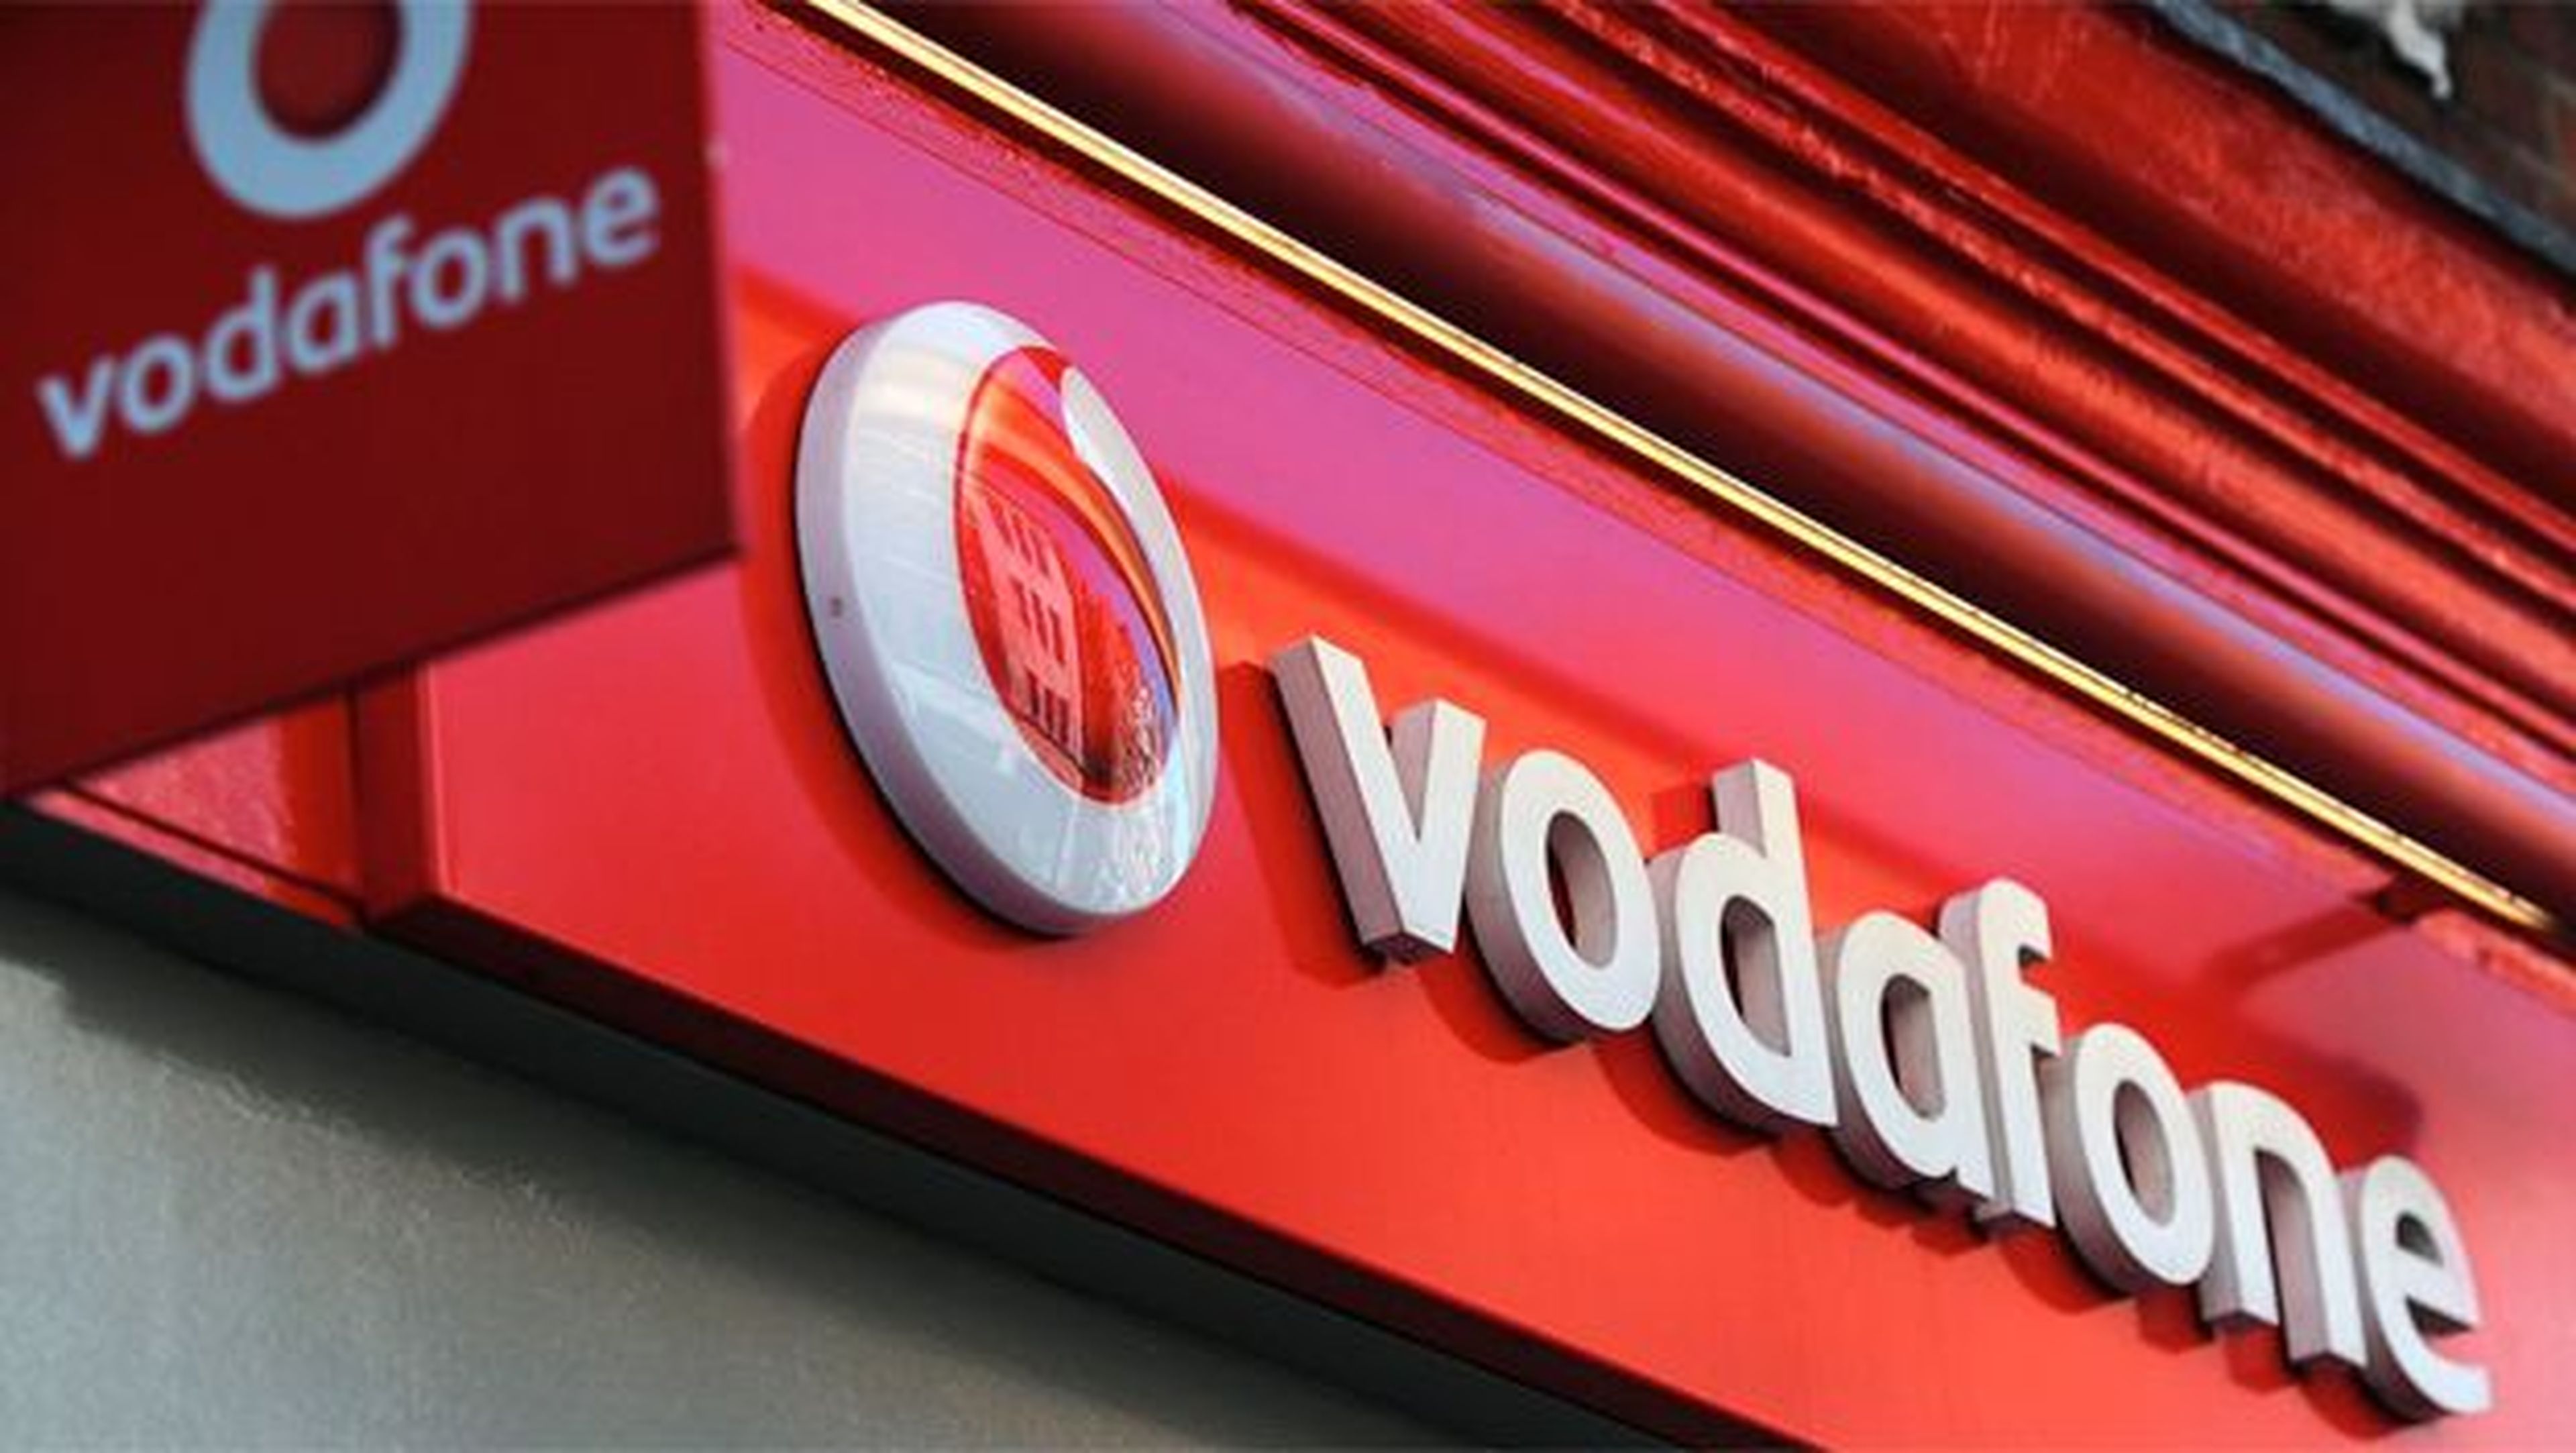 Vodafone anuncia el Internet móvil más rápido de España.